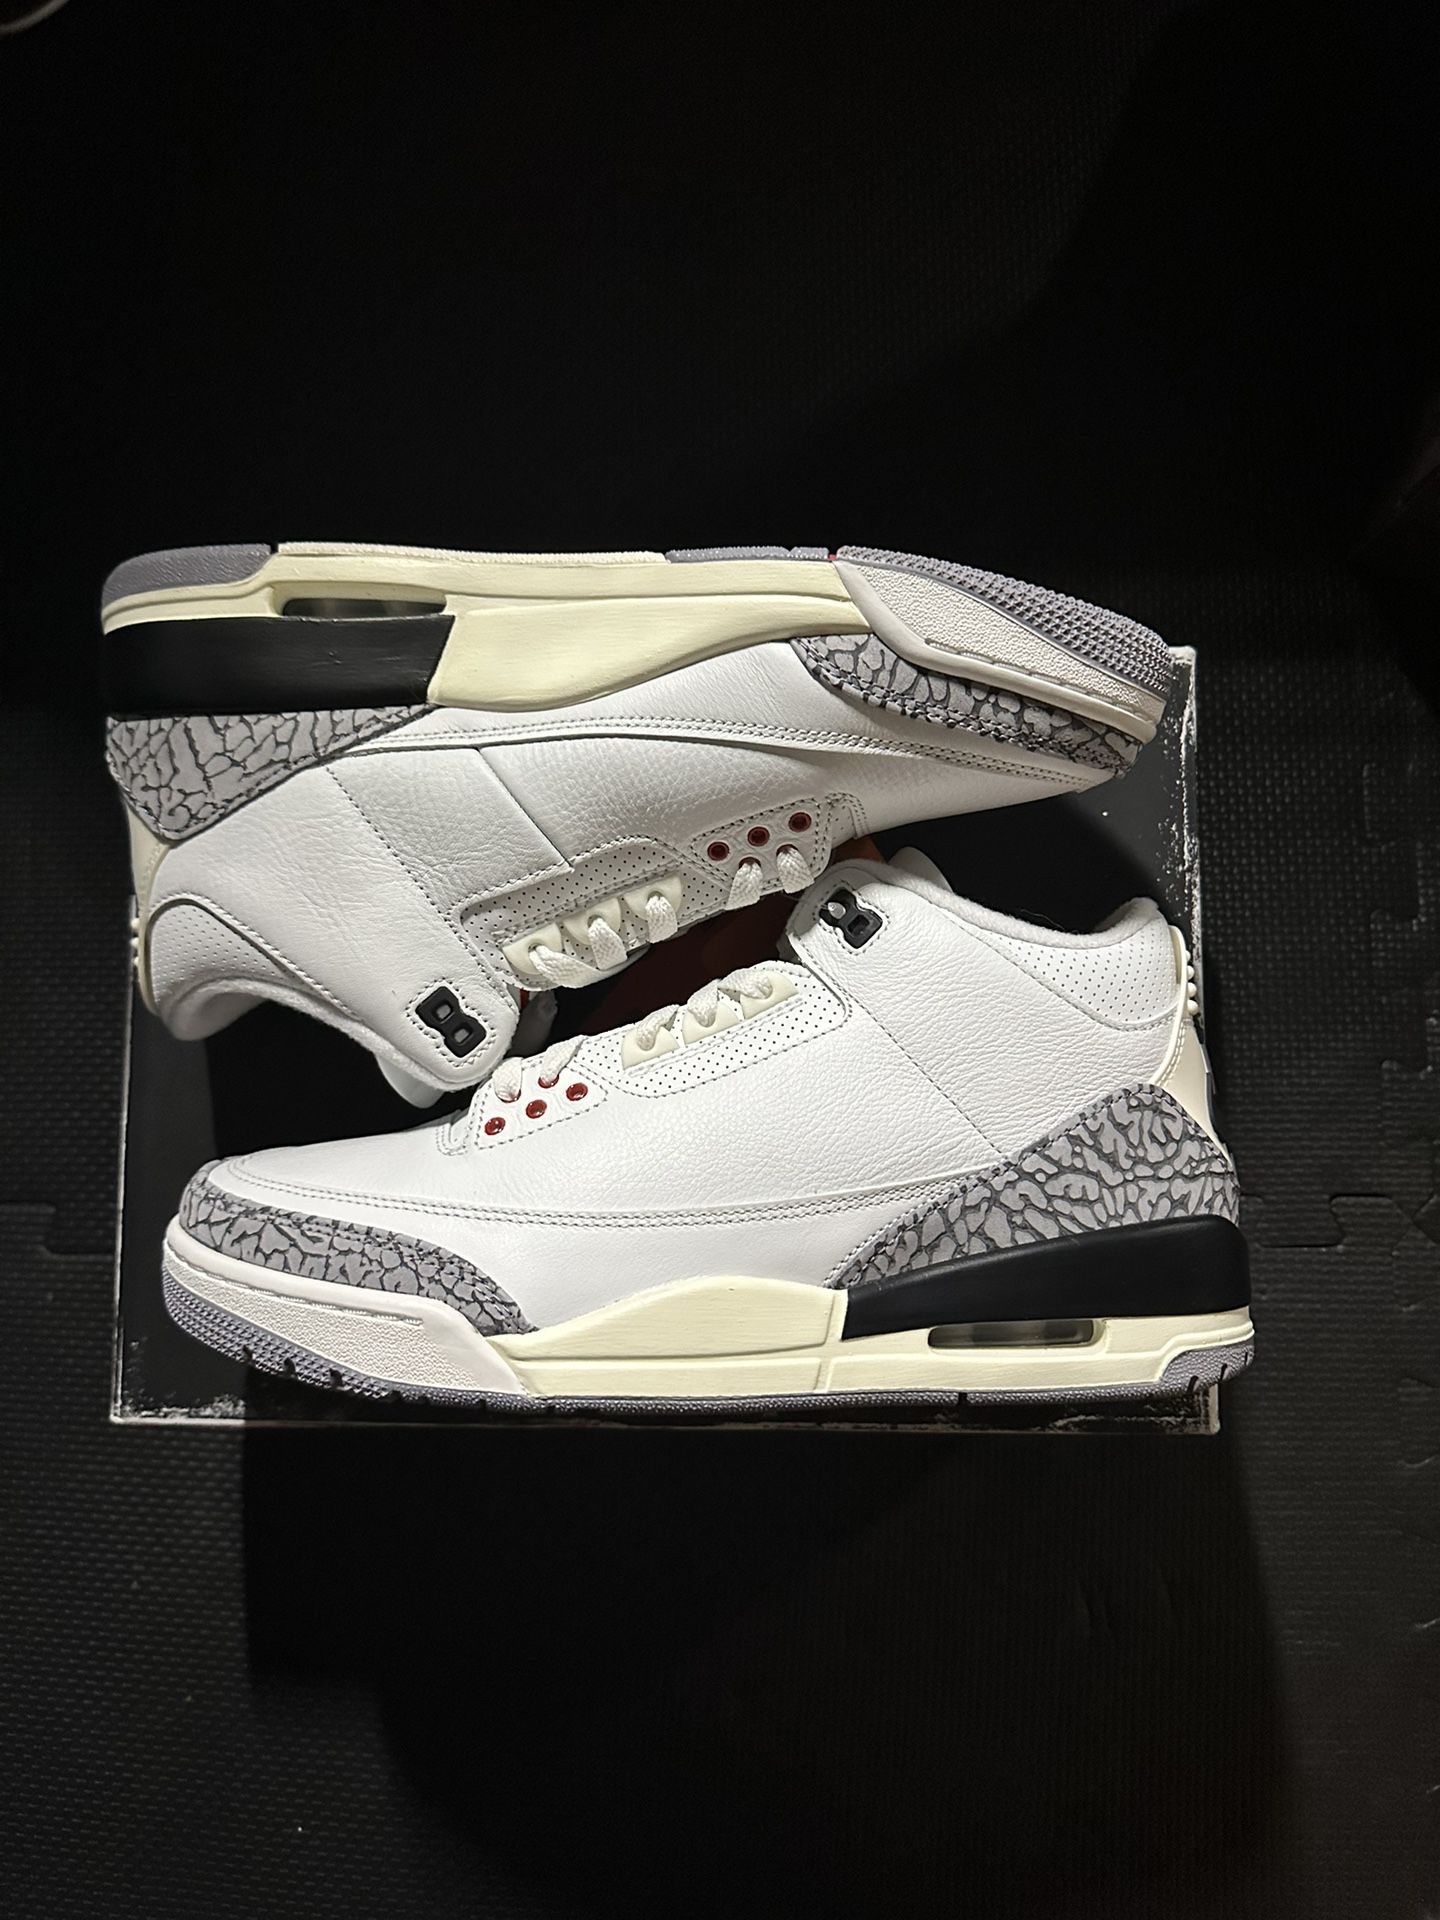 Jordan 3 Retro White Cement “Reimagined”